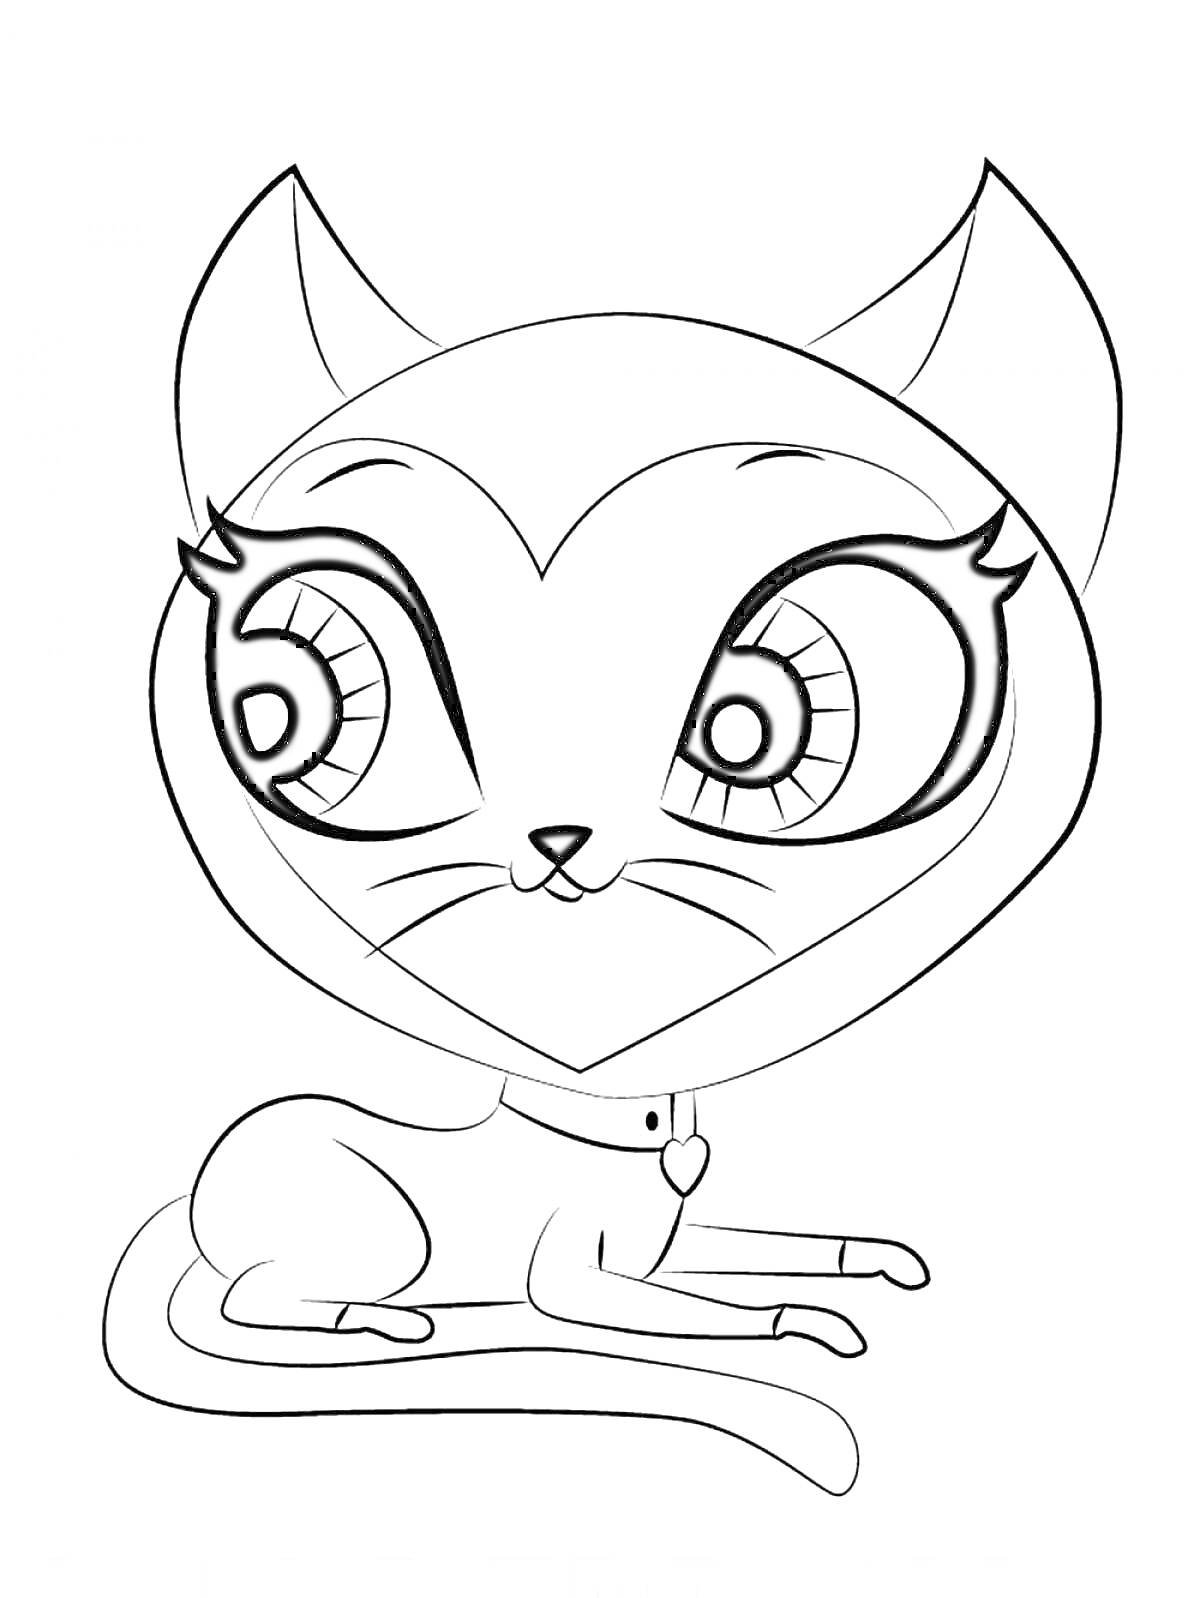 Раскраска Кошка с большими глазами и ошейником с сердечком